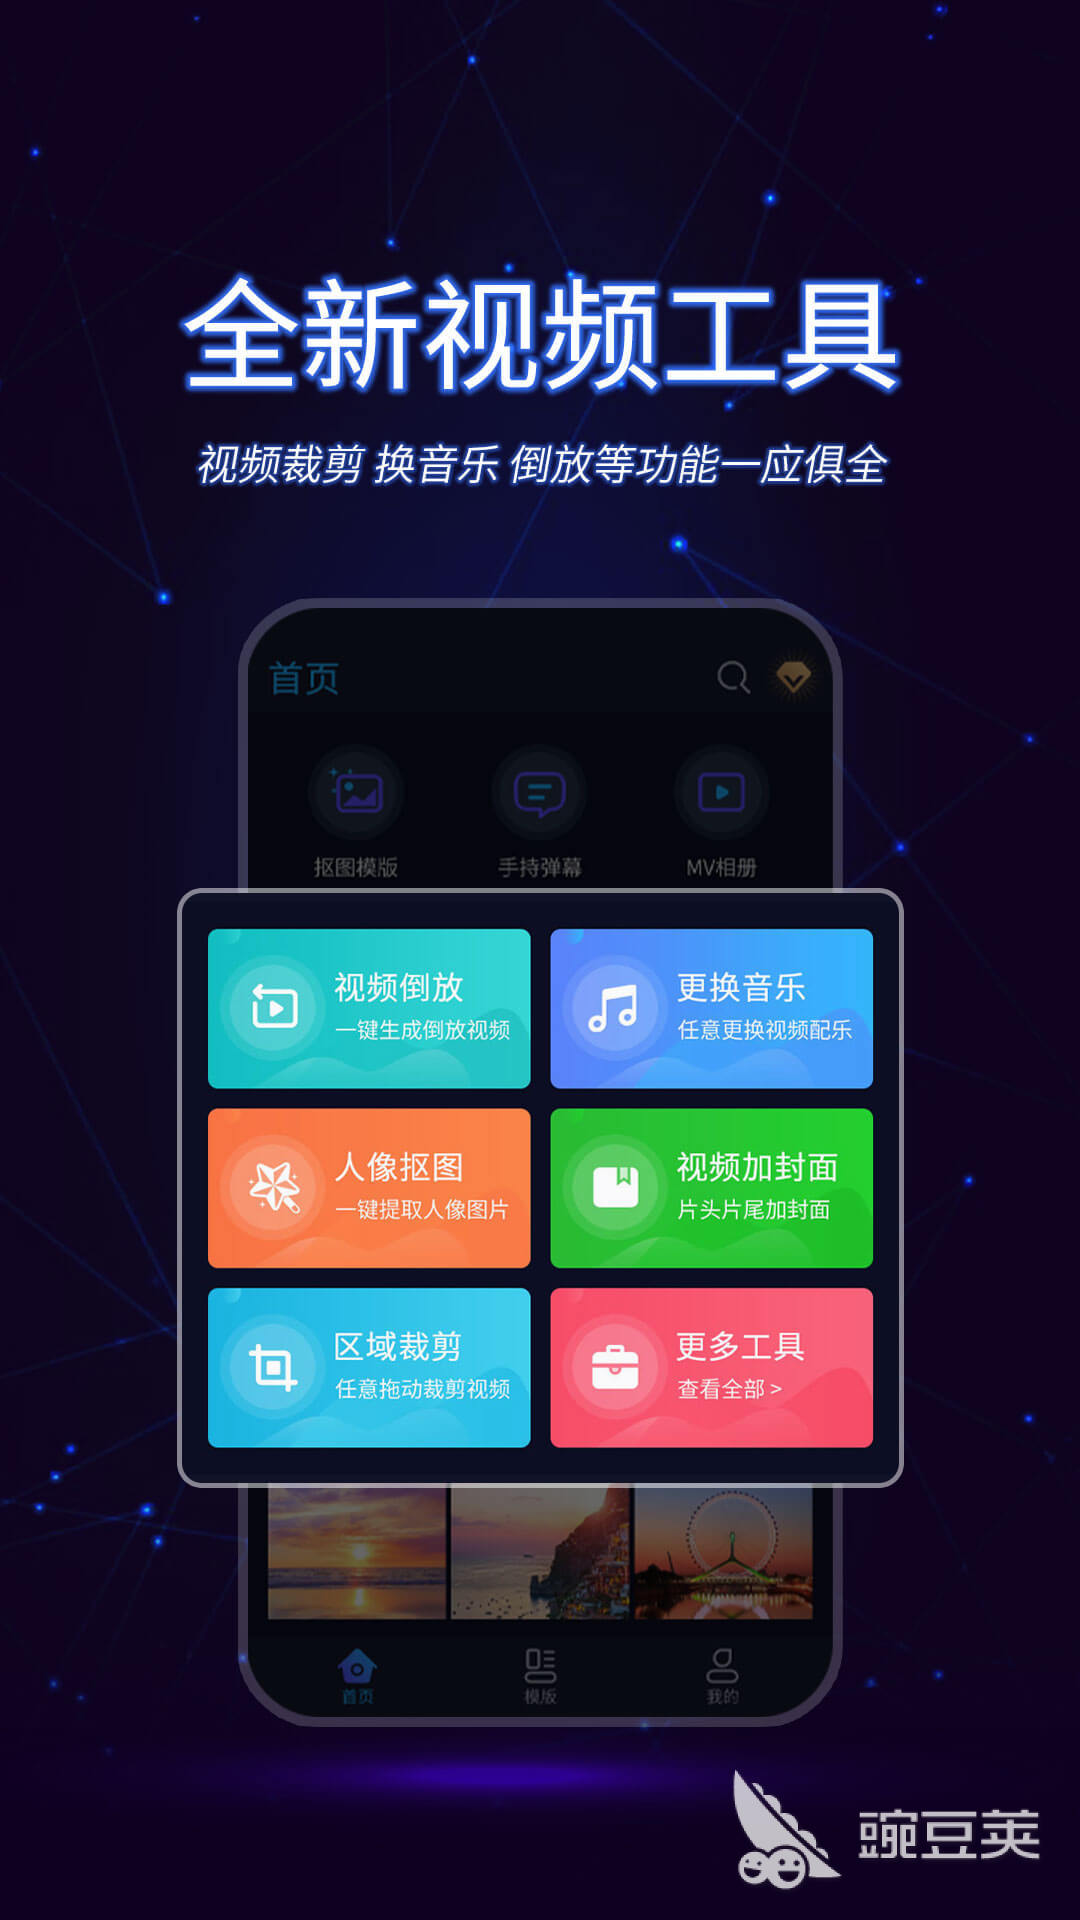 视频瘦脸软件app下载2022 最火视频瘦脸软件推荐